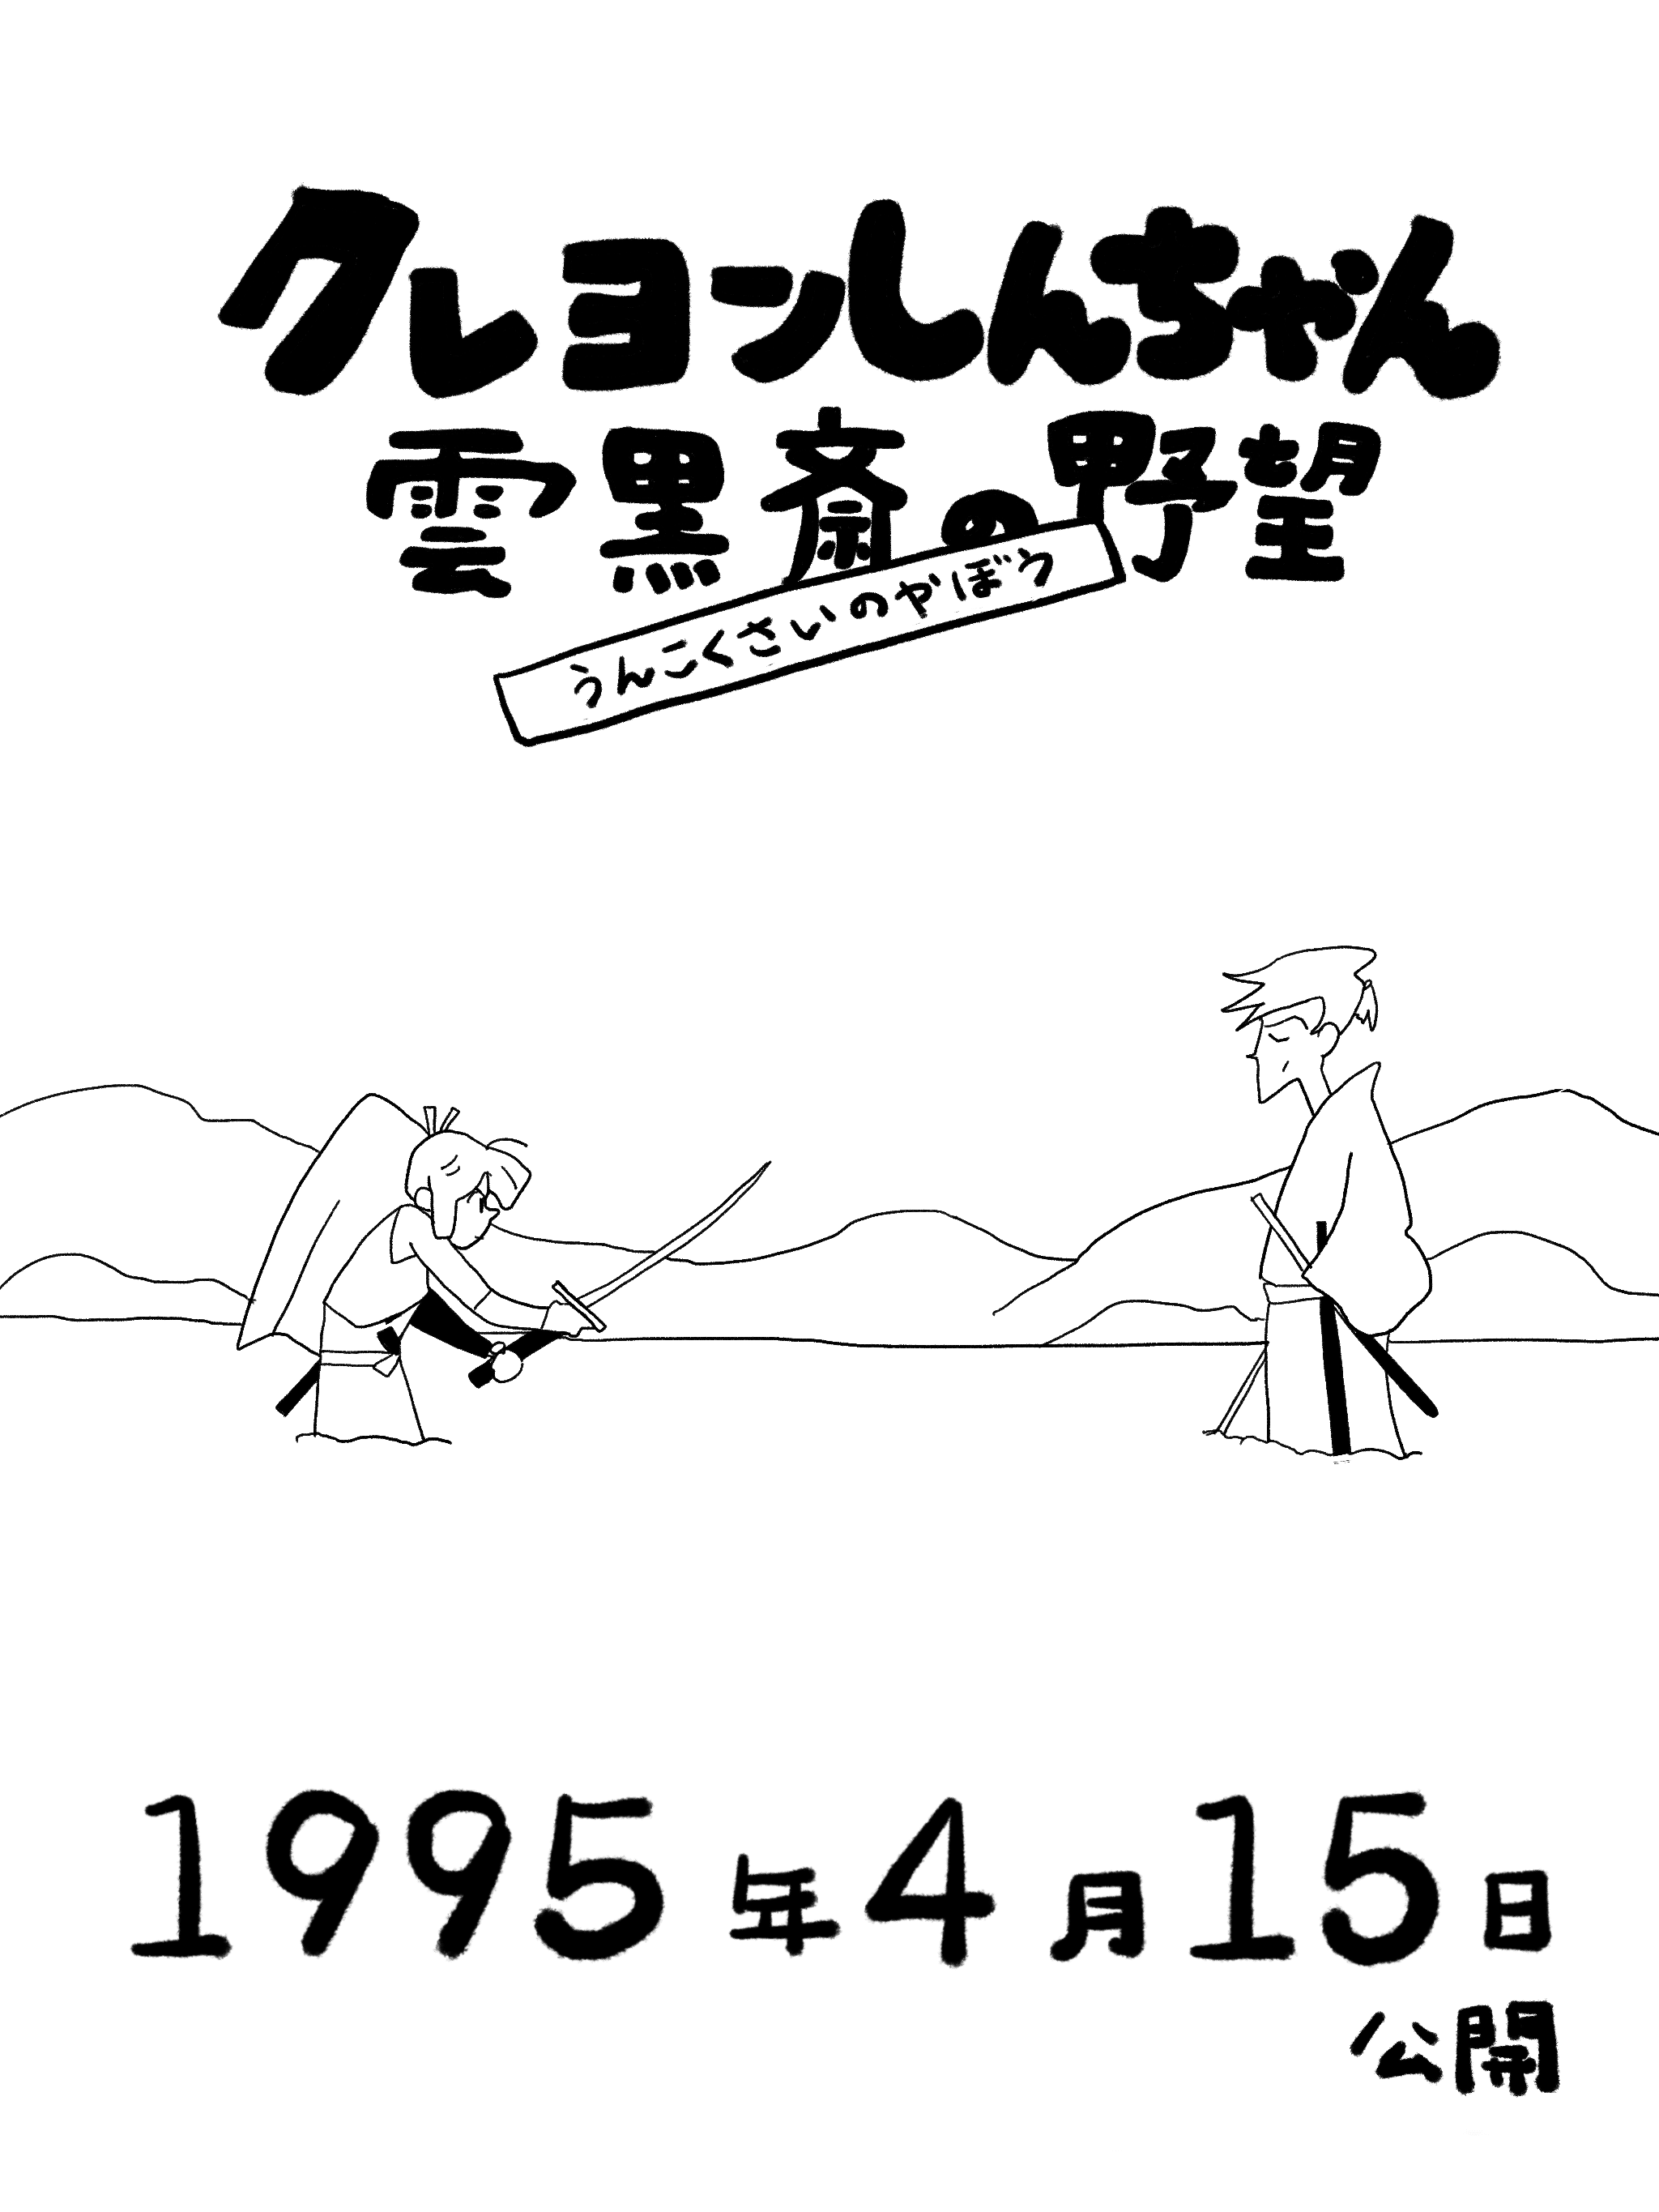 クレヨンしんちゃん雲黒斎の野望 1995 雨森わわわ note